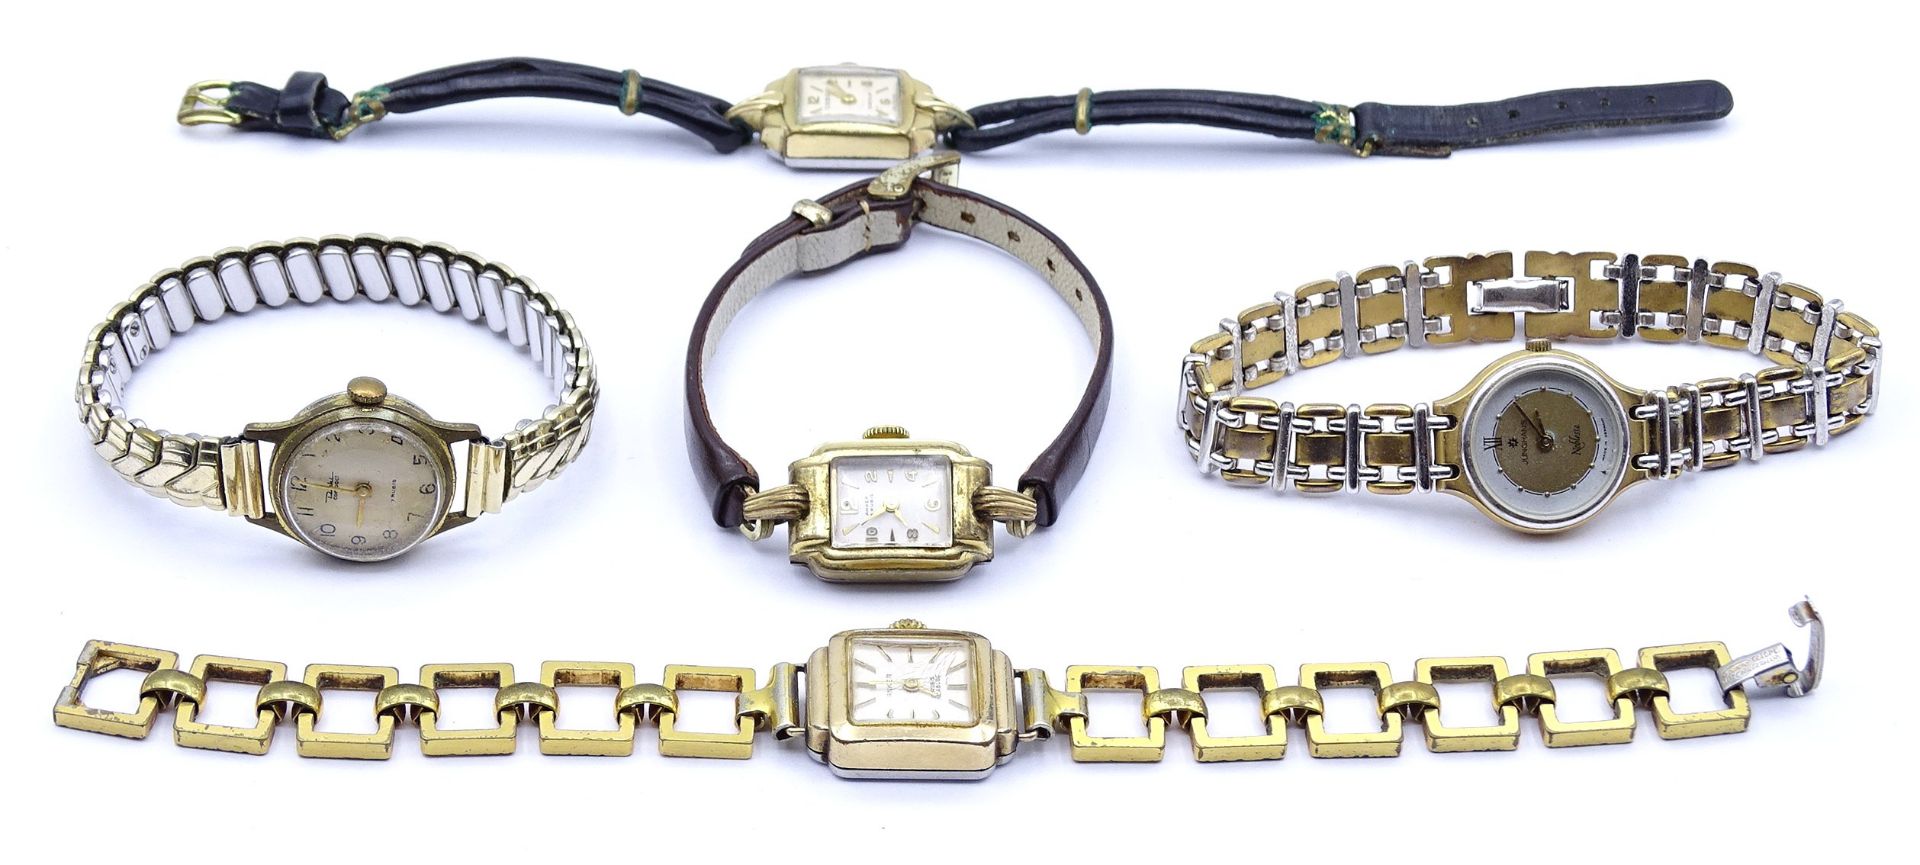 5x Damen Armbanduhren, mechanisch und Quartz, 2x Uhren laufen, Alters- und Gebrauchsspuren - Bild 2 aus 4